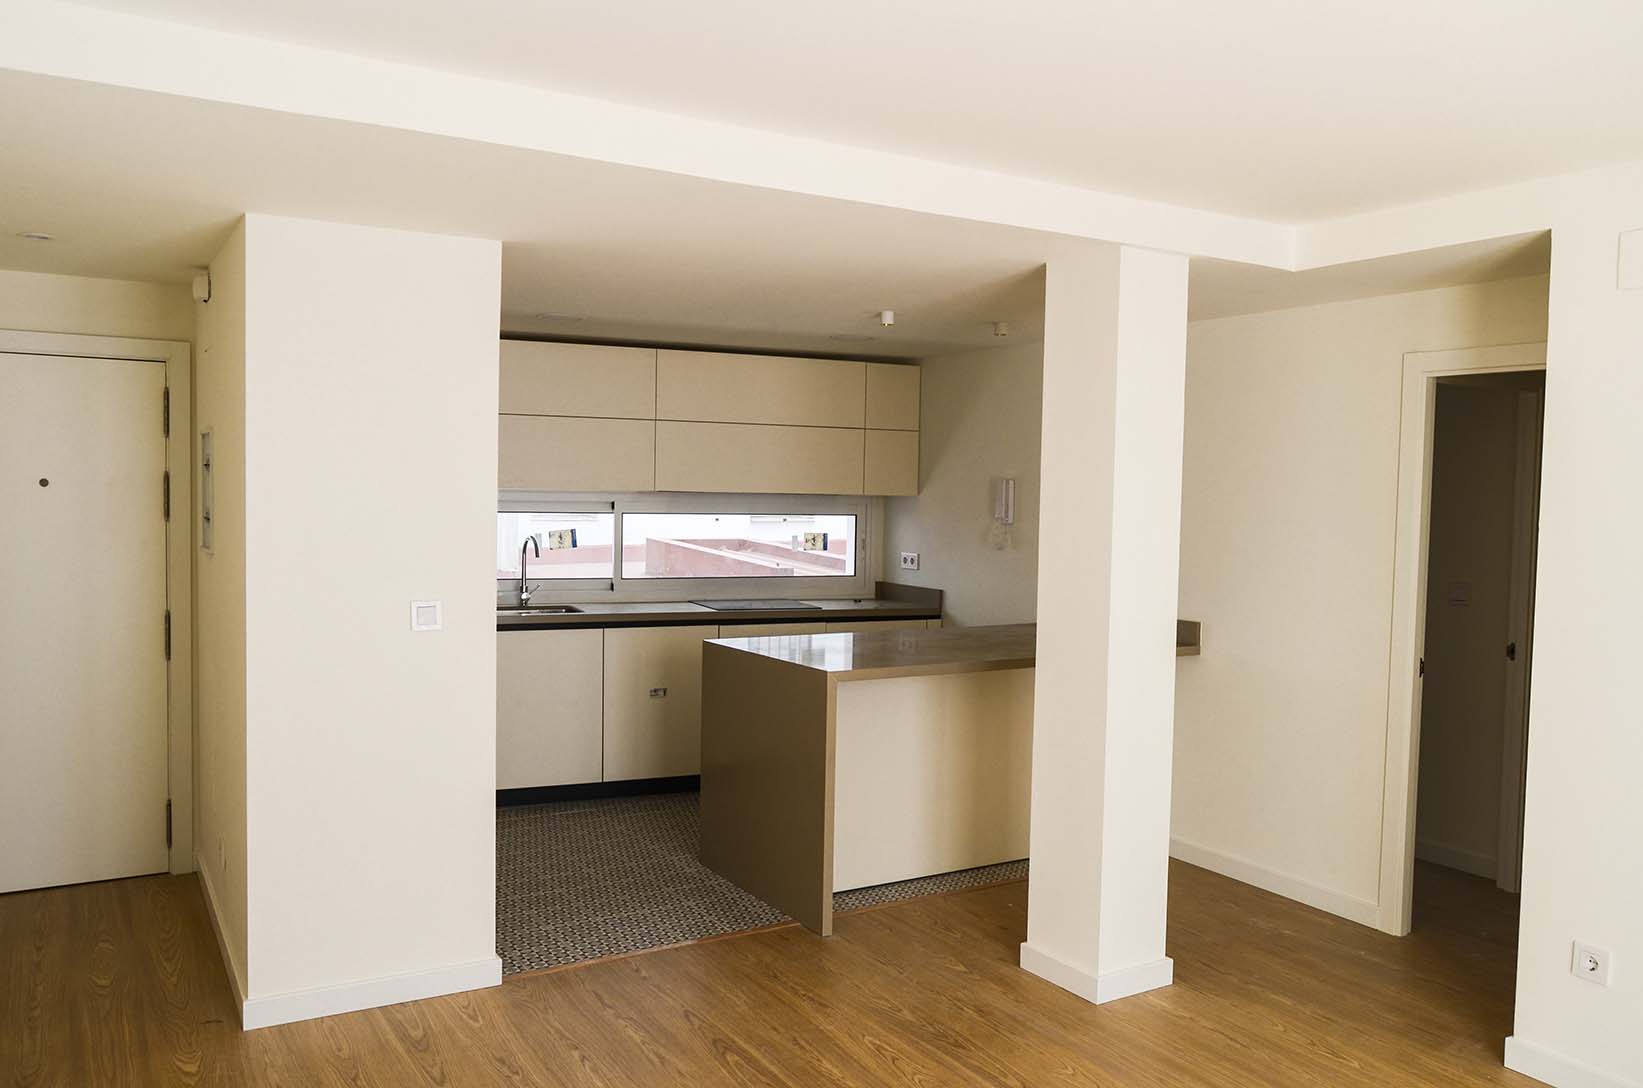 El pavimento es el único elemento que separa funcionalmente al espacio del salón del de la cocina.